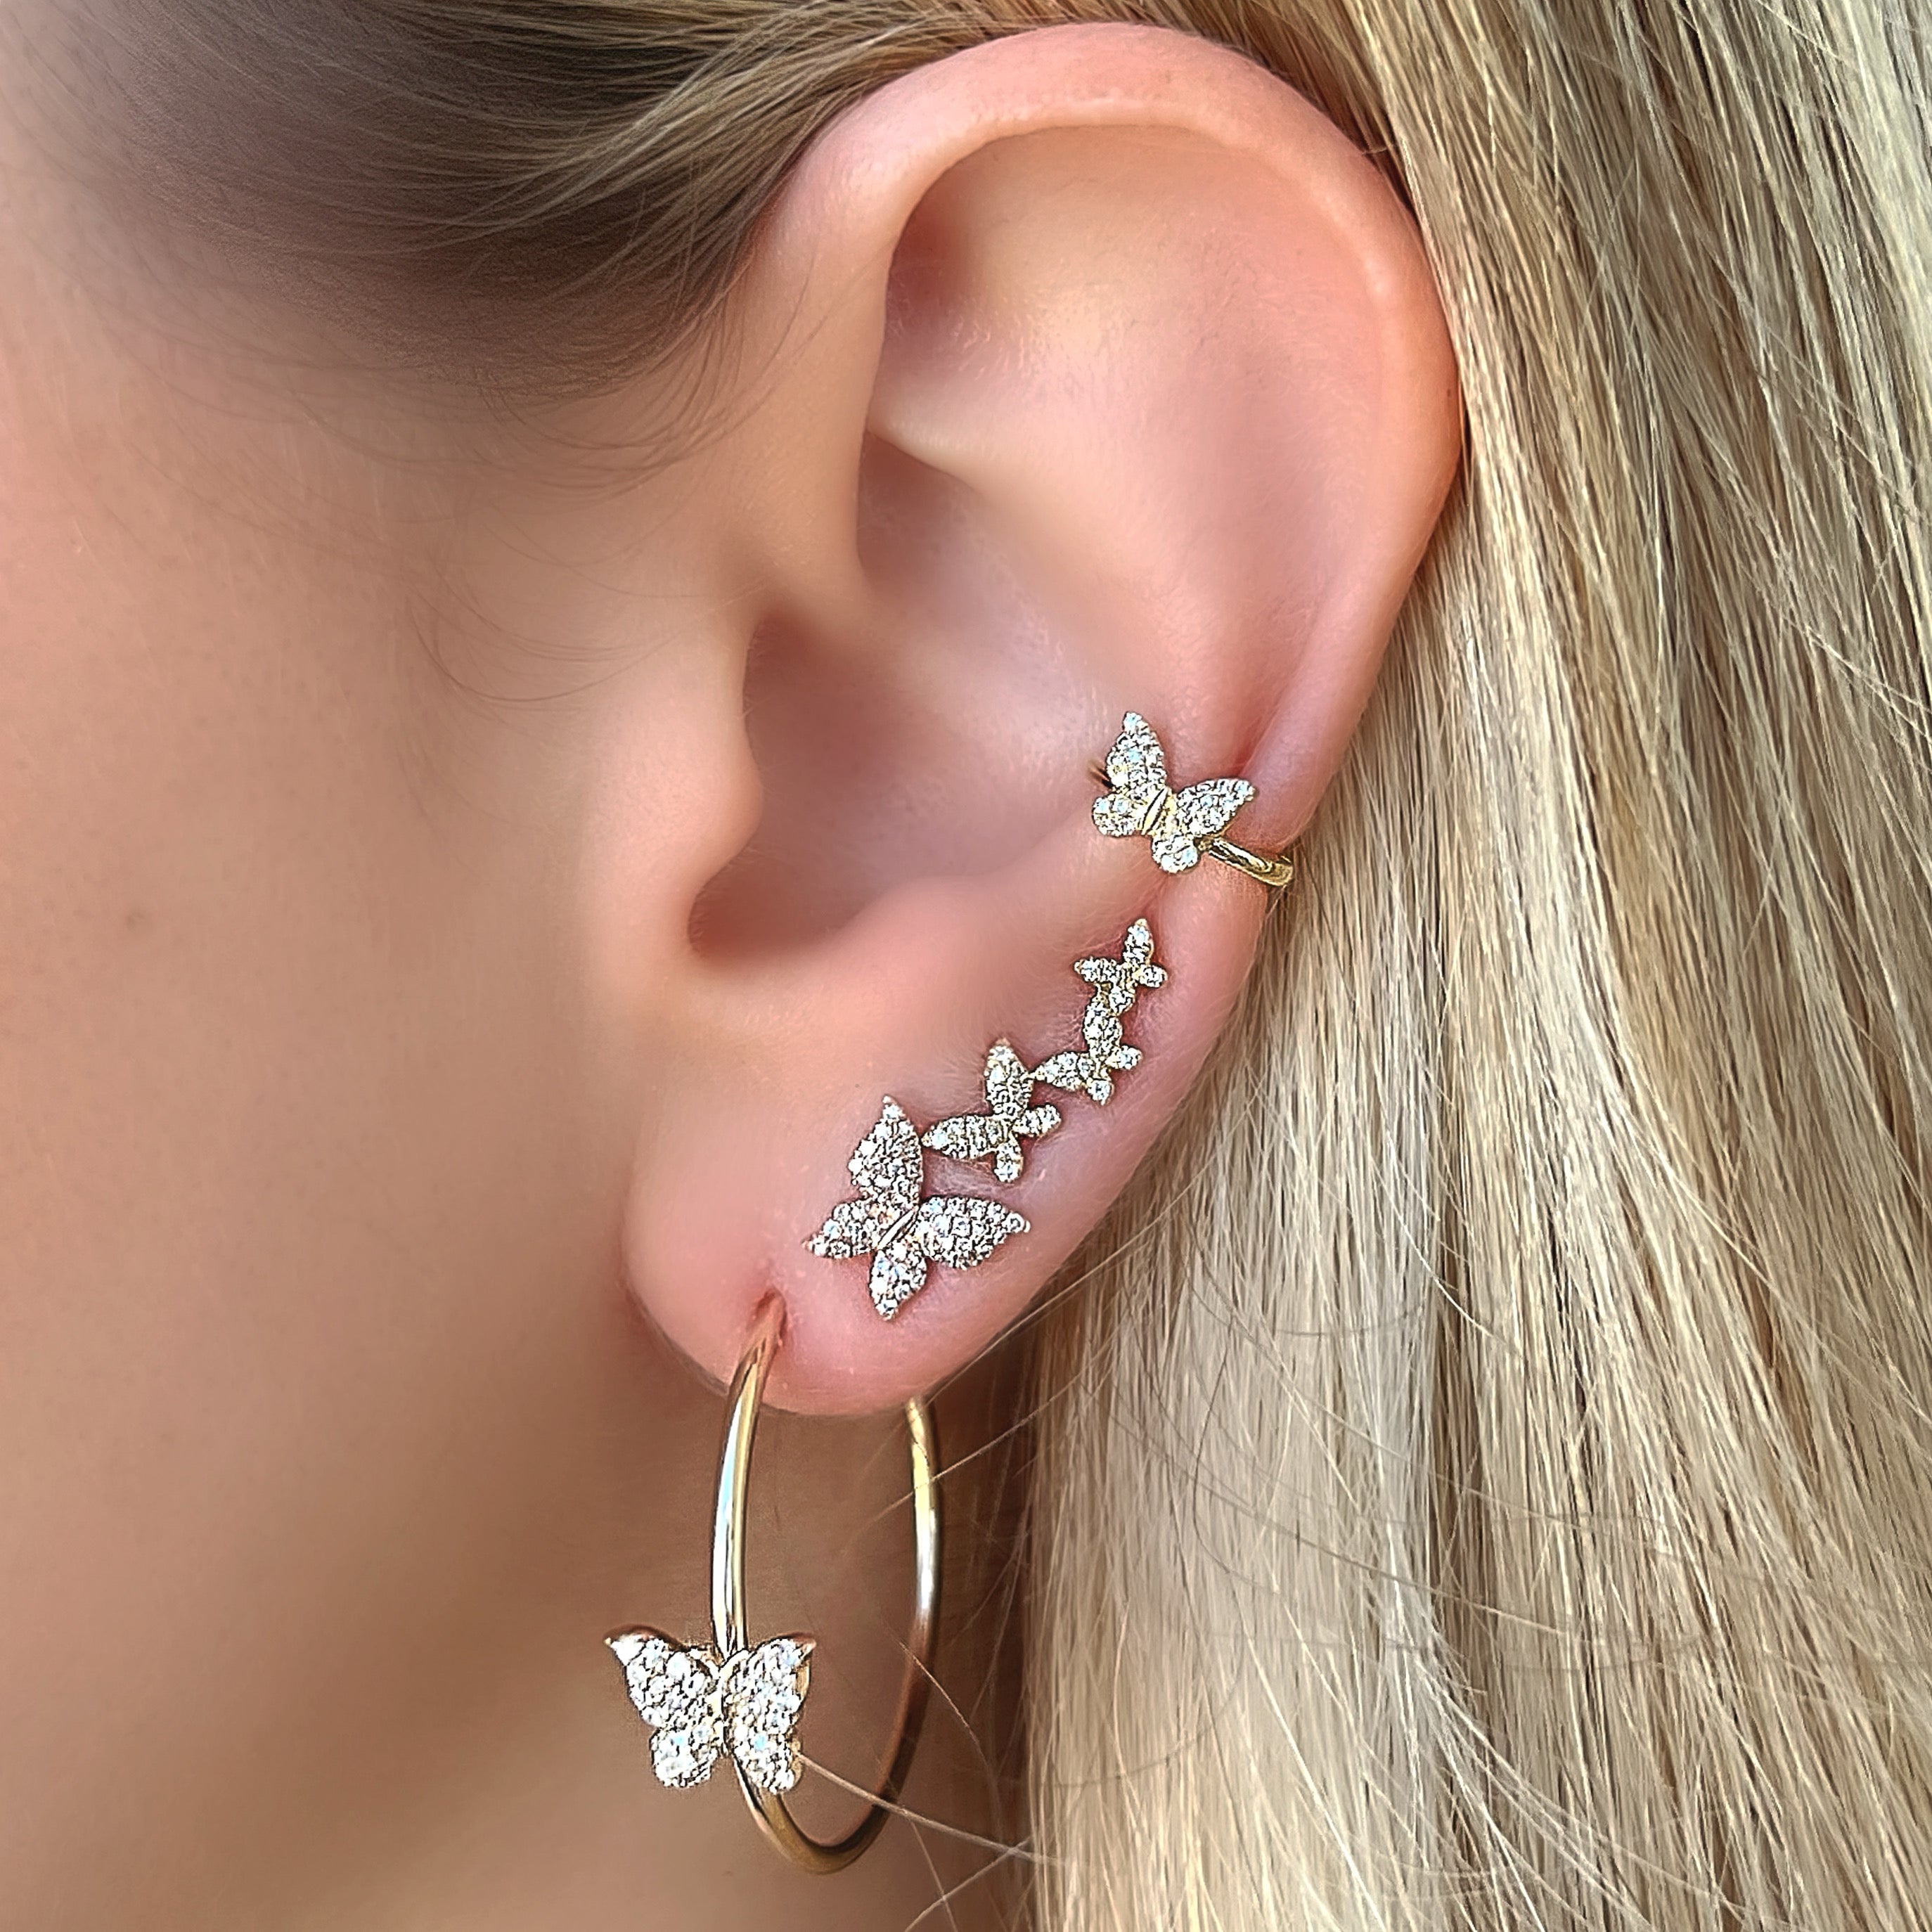 14K Gold Micro Pave Diamond Monarch Butterfly Button Earrings - Earrings - Izakov Diamonds + Fine Jewelry